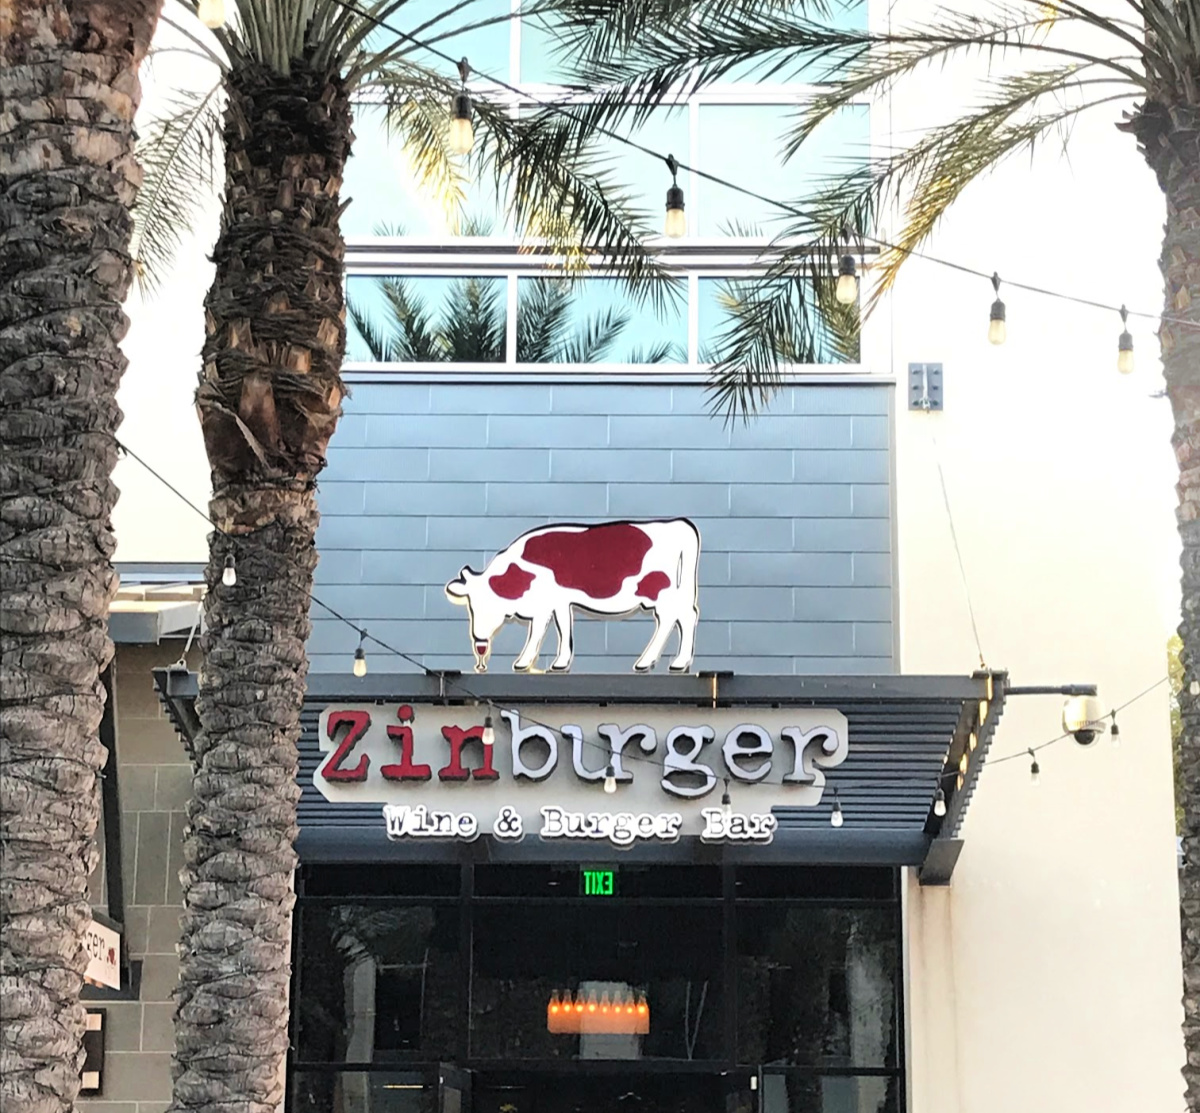 Restaurants in Phoenix